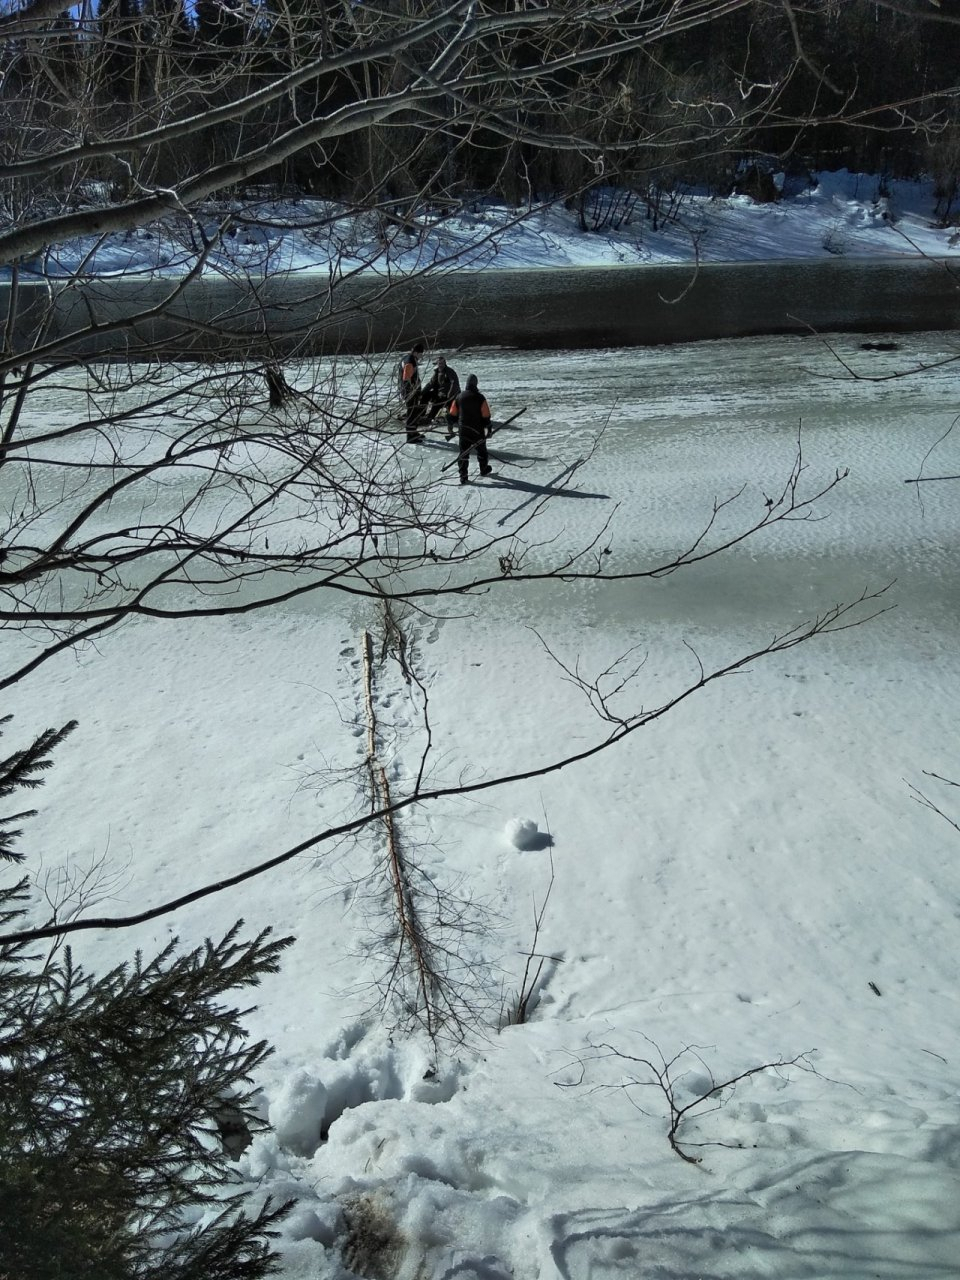 "Провалился под лед": в Коми рыбак вызвал спасателей по пустяку